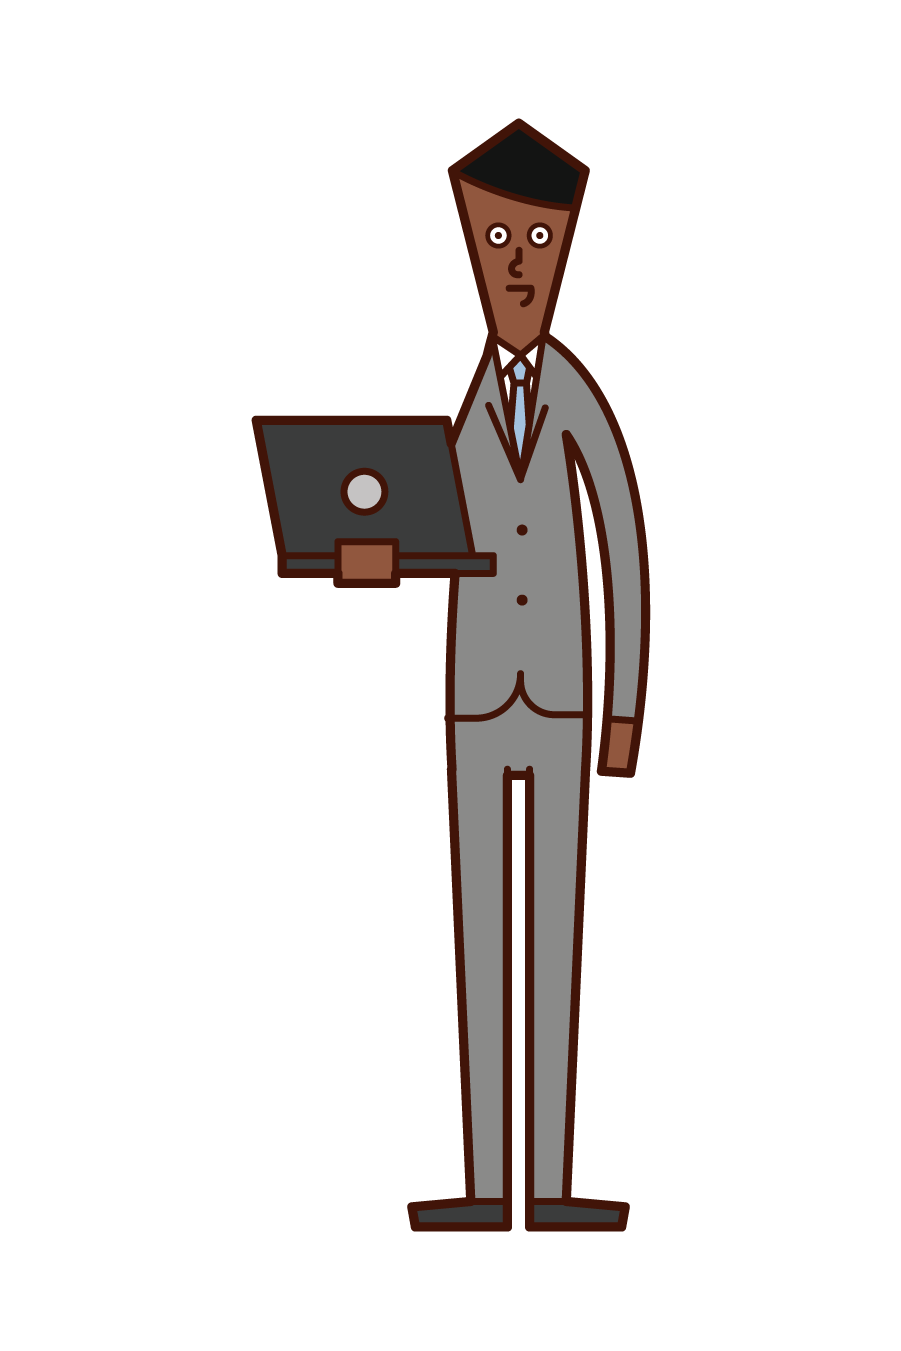 컴퓨터를 가진 사람 (남성)의 그림